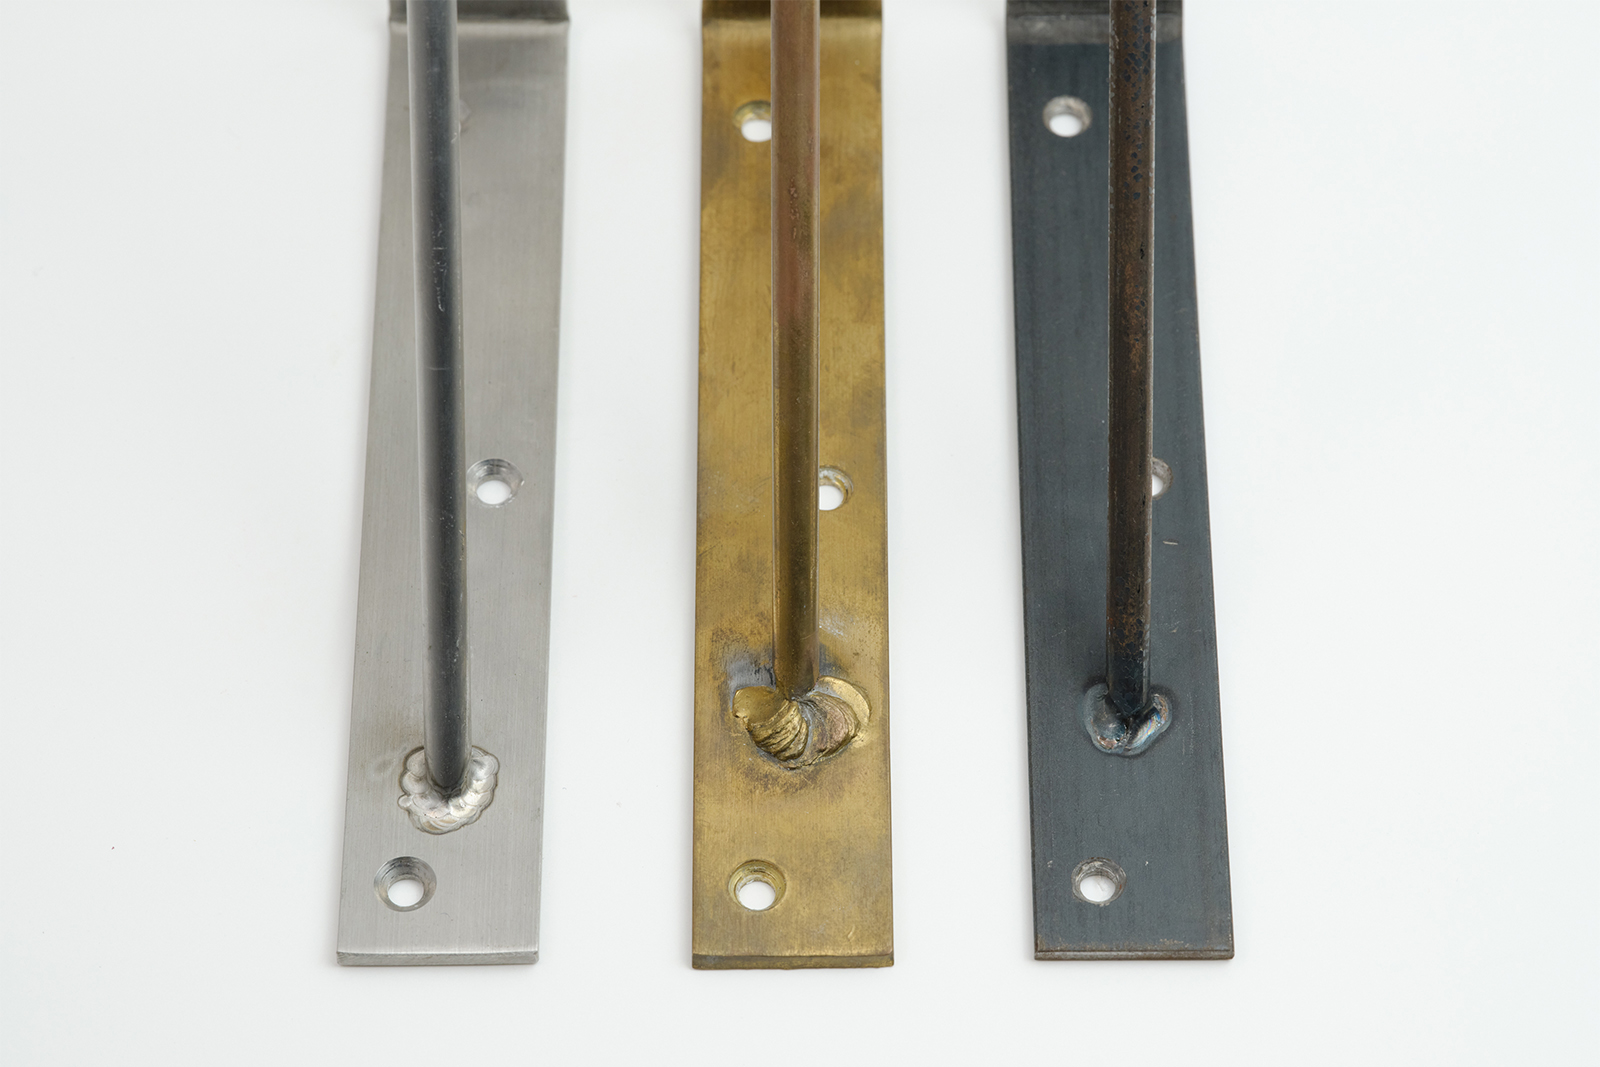 棚受け金物 ステンレス D200 PS-BK001-02-G141 素材は全部で3種類。左から、ステンレス・真鍮・鉄